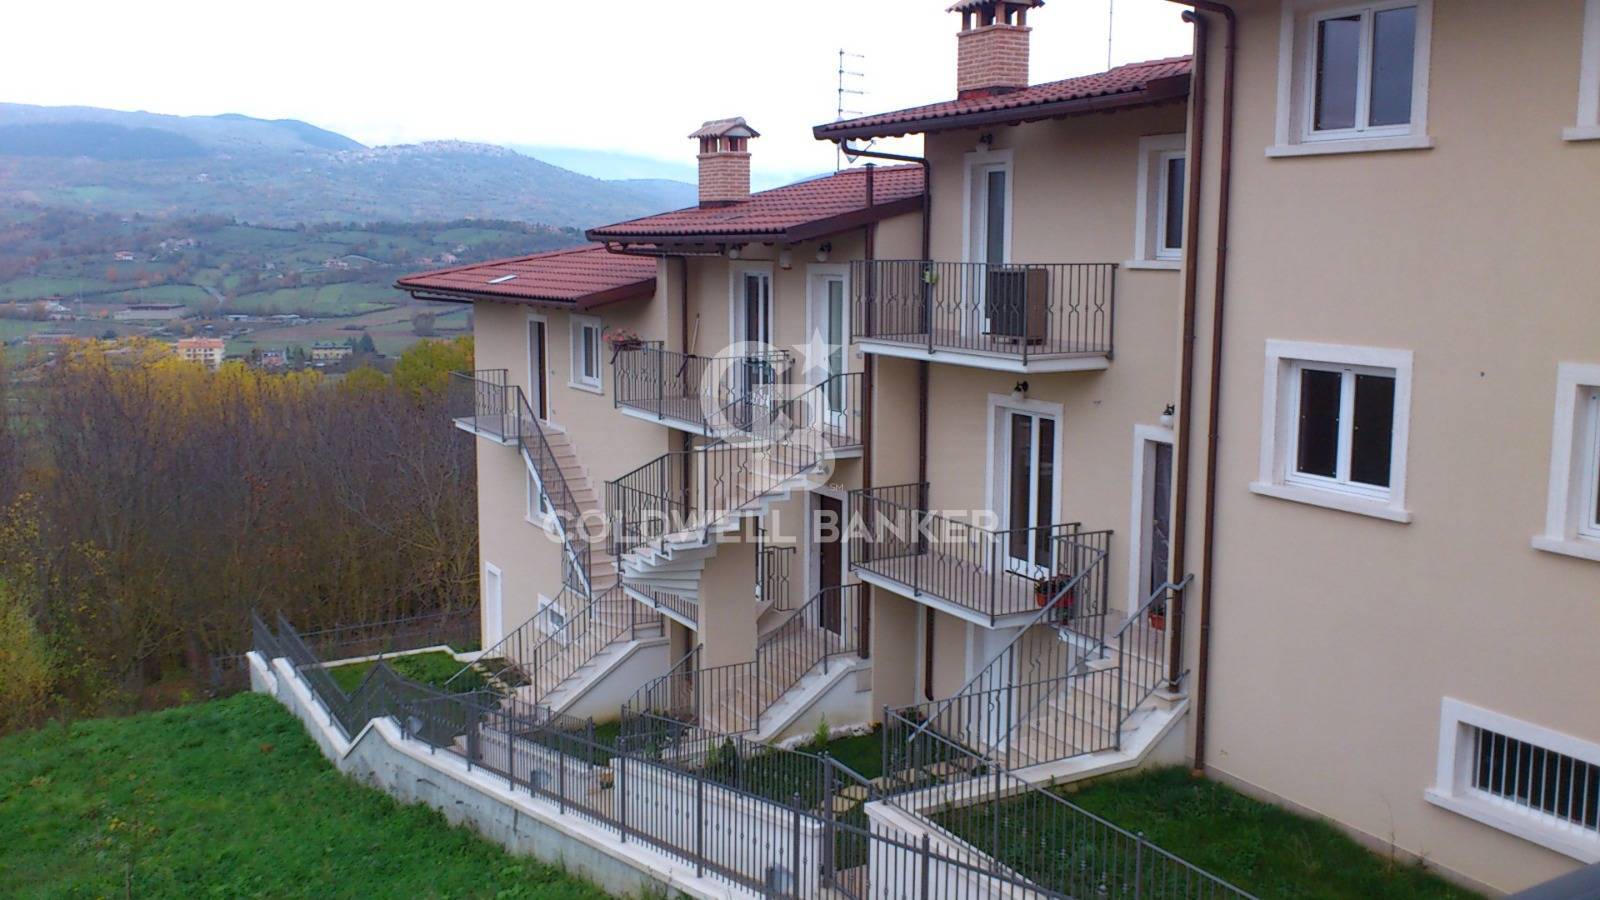 Appartamento in vendita a Tagliacozzo, 3 locali, prezzo € 107.000 | CambioCasa.it